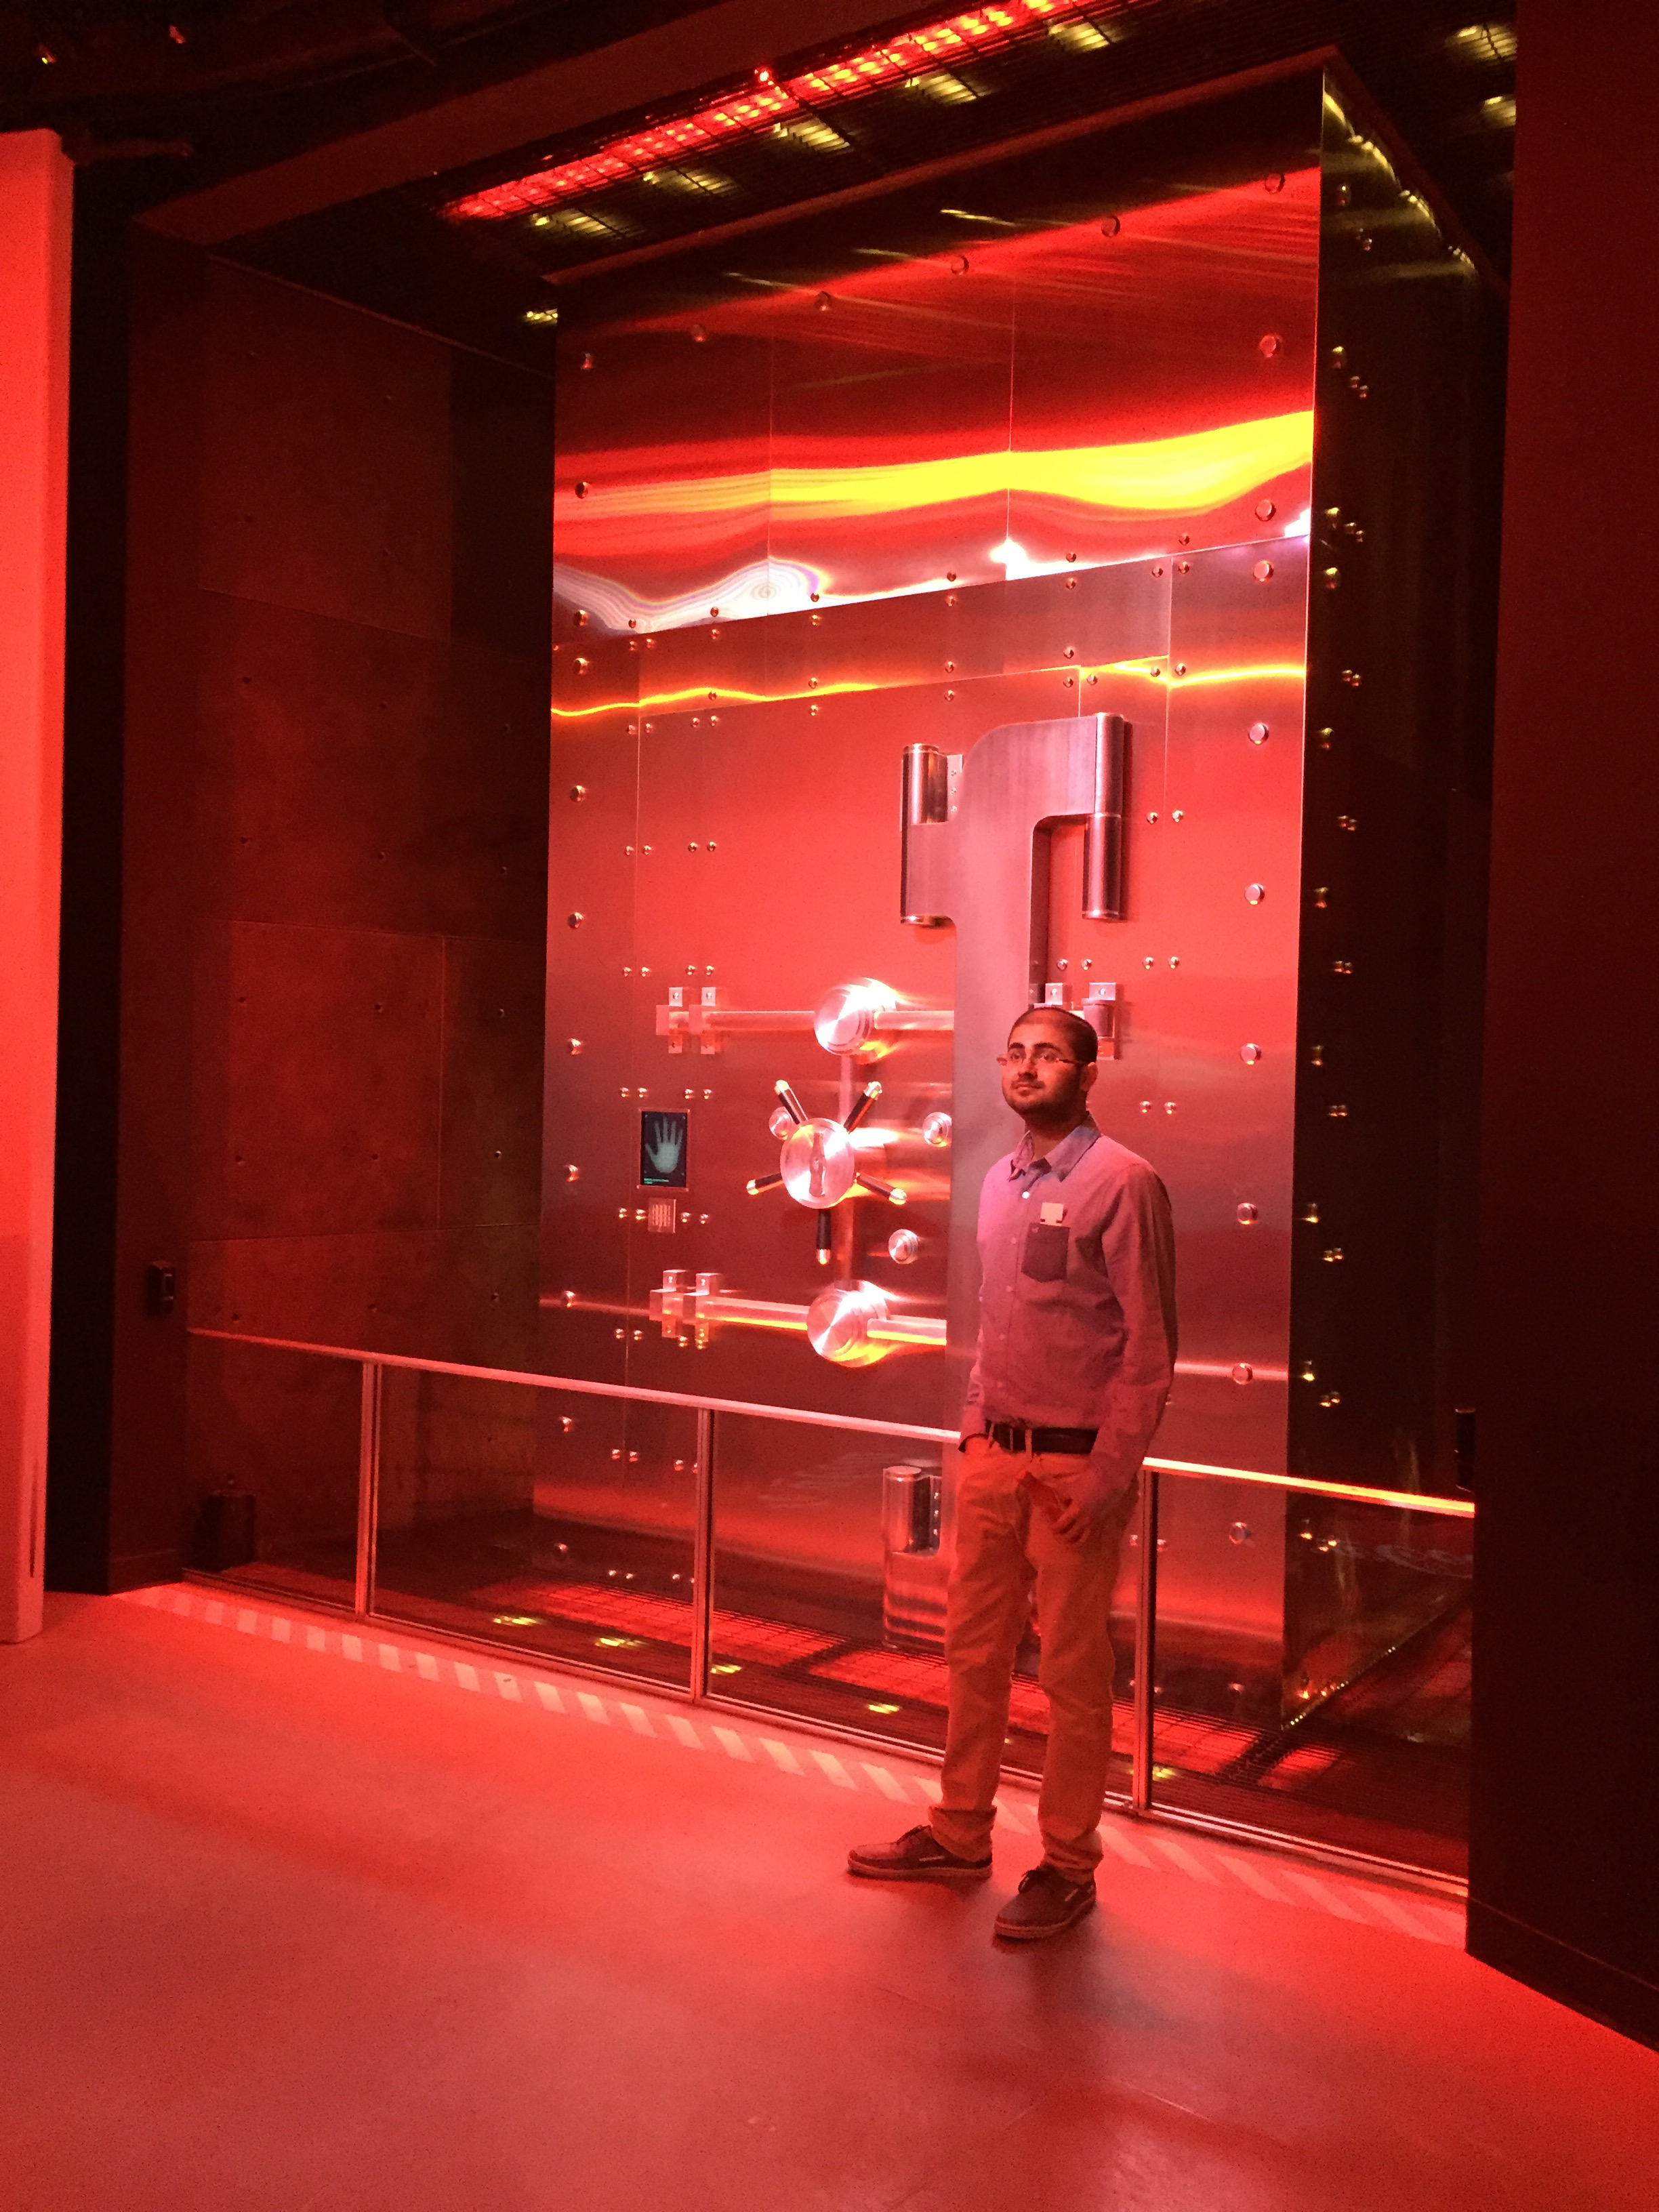 An employee stands in front of a metal vault door.